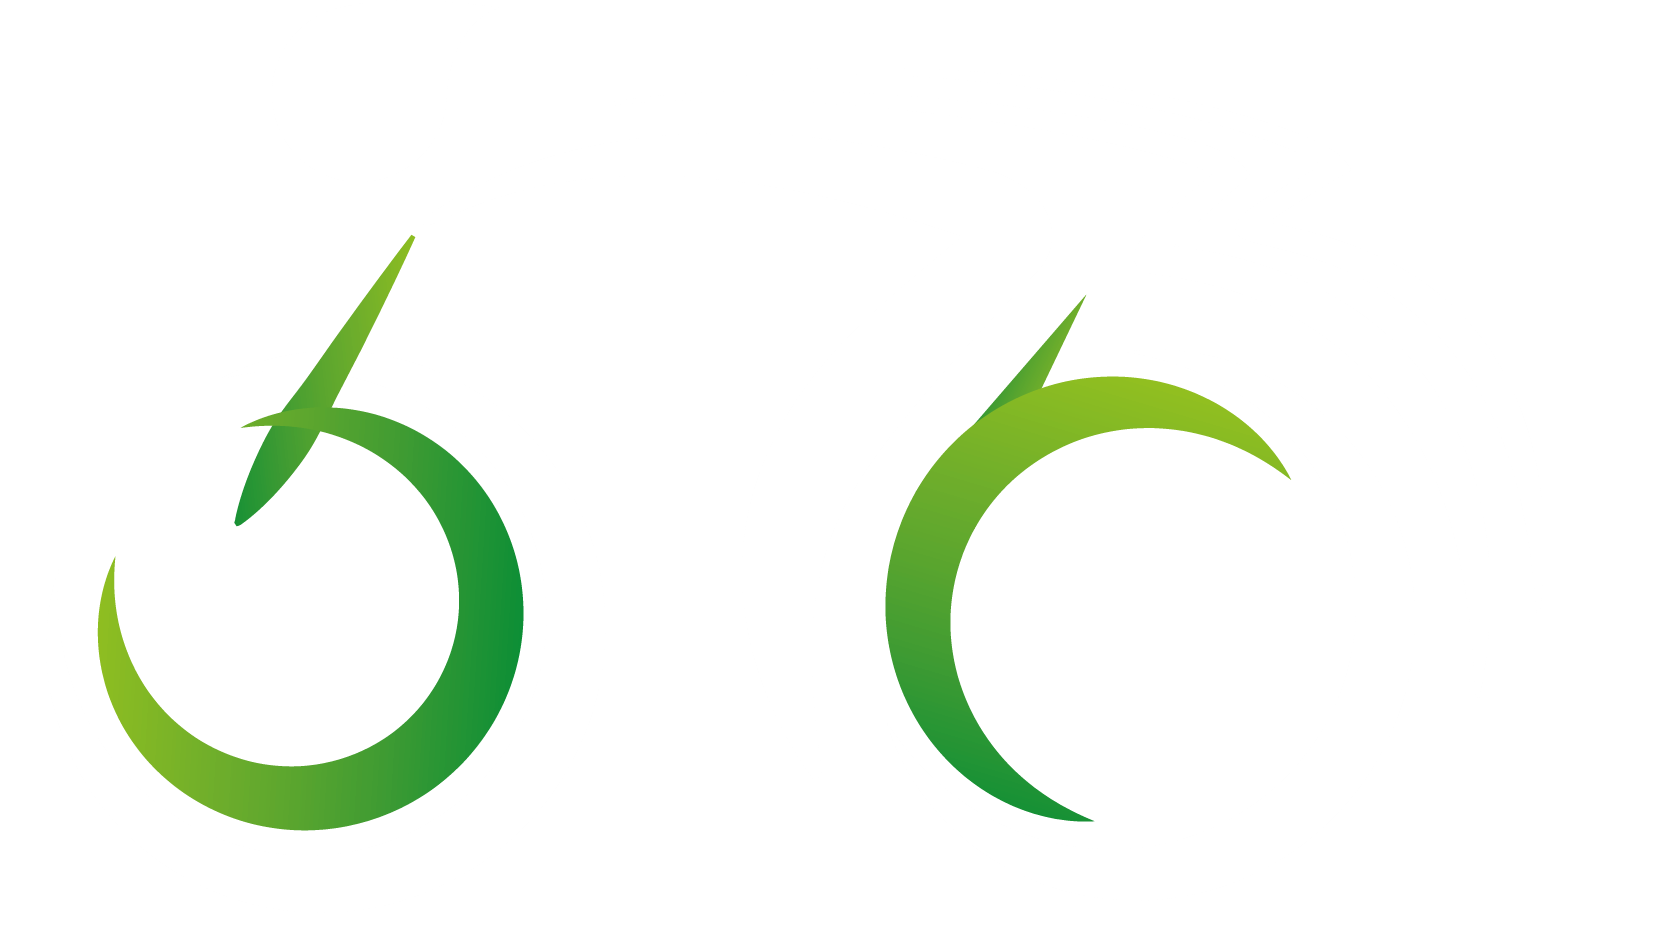 Bike rally logo